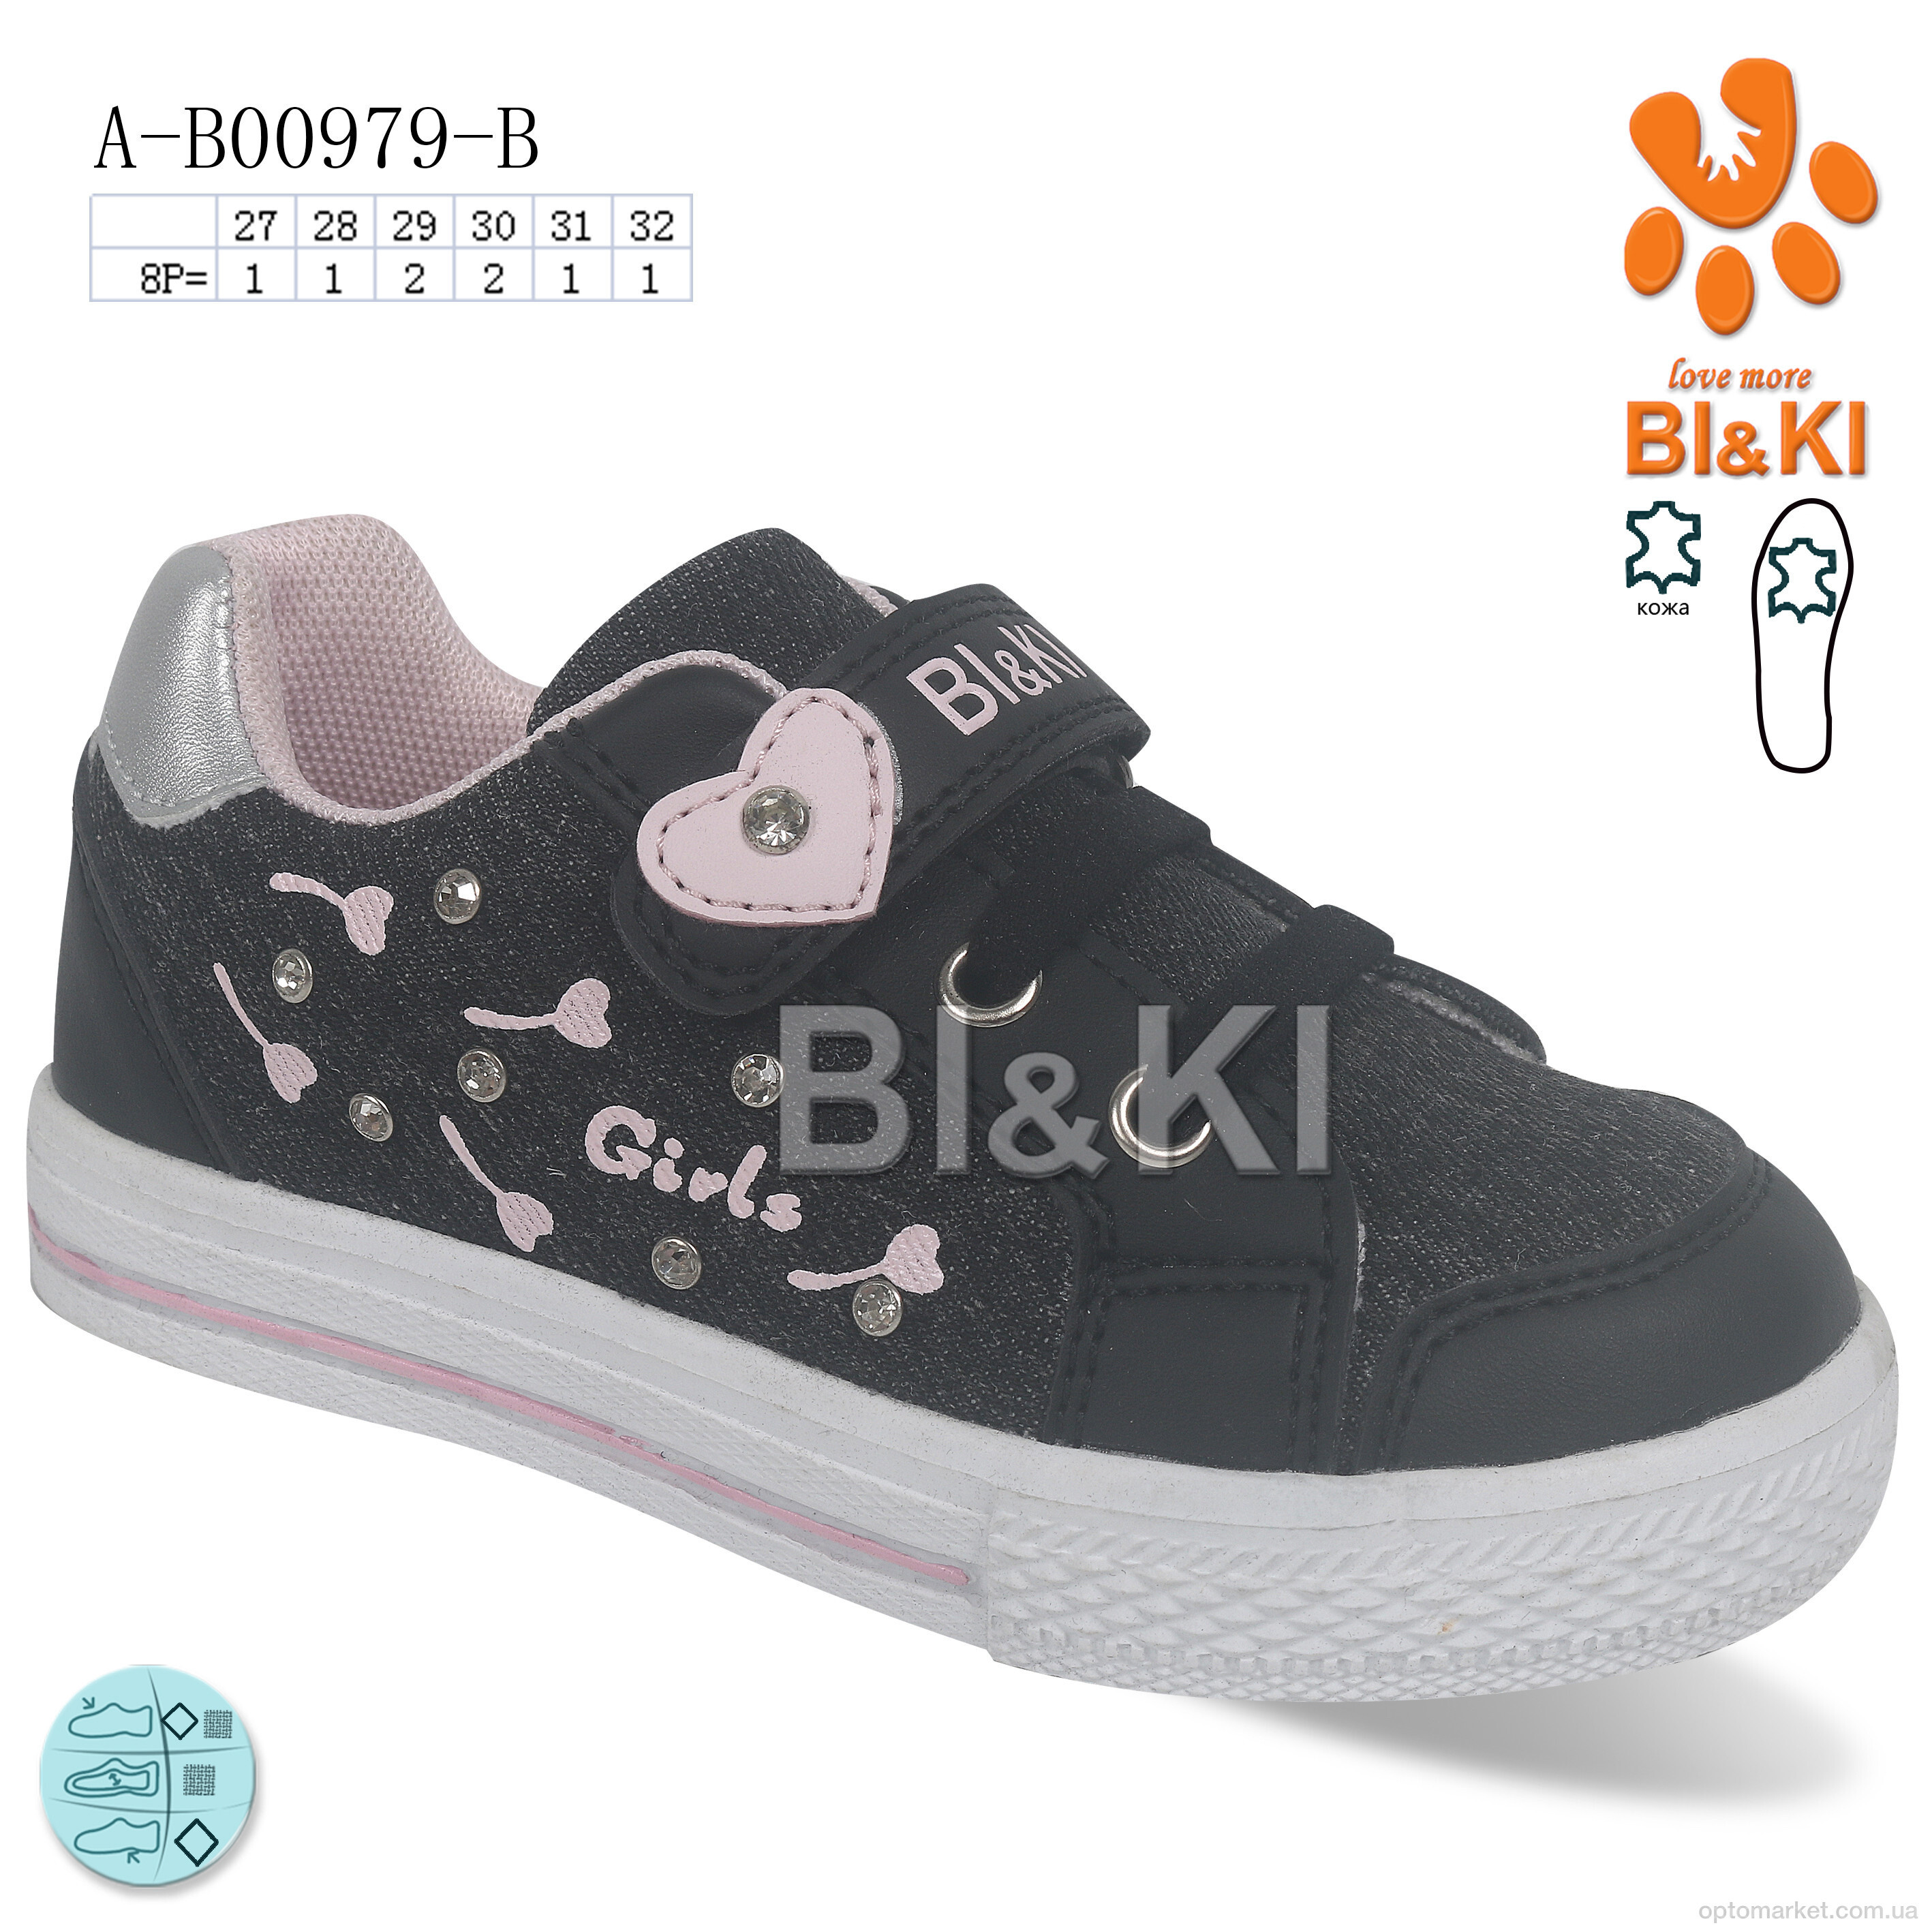 Купить Кросівки дитячі A-B00979-B Bi&Ki чорний, фото 1